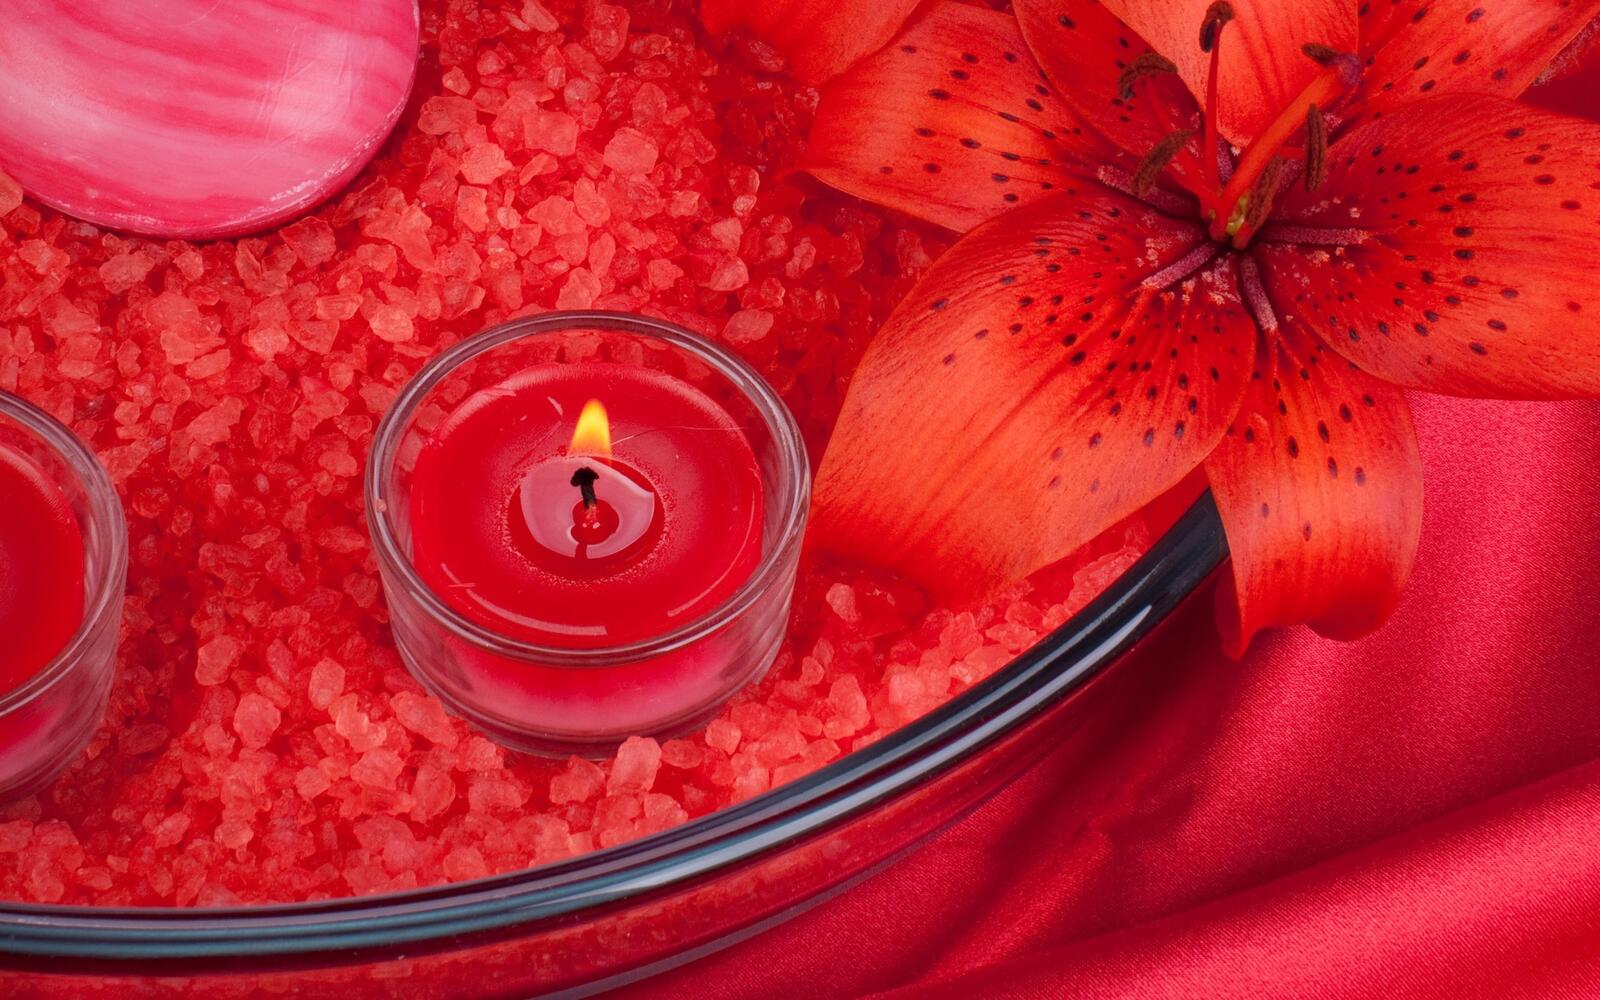 Бесплатное фото Горящая свеча на красном фоне с лилией